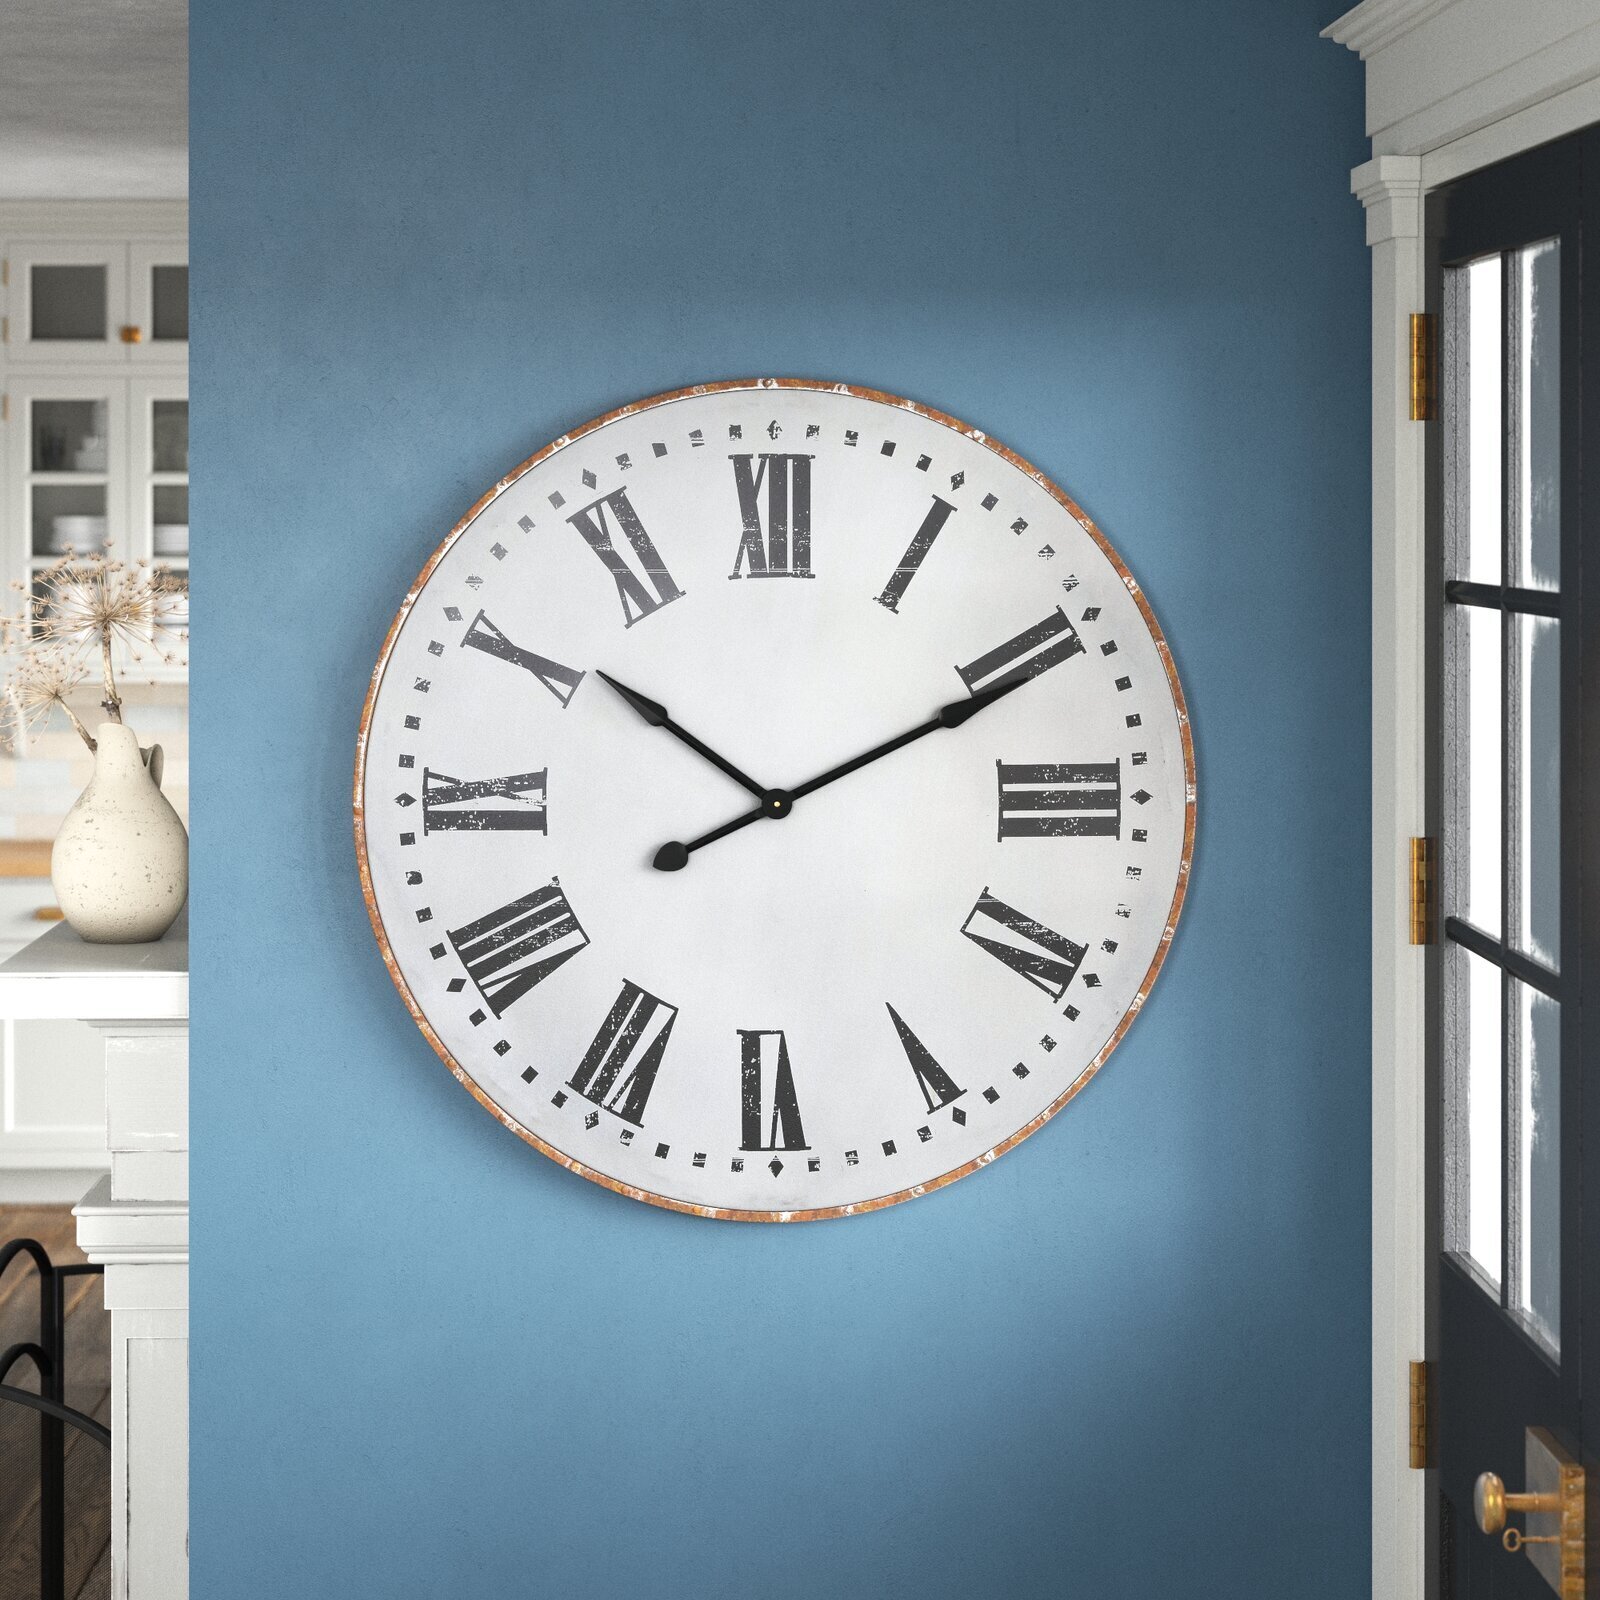 9.5 Inch Wall Clock Round Metal Retro Orange Indoor Quartz Movement Arabic Dial 